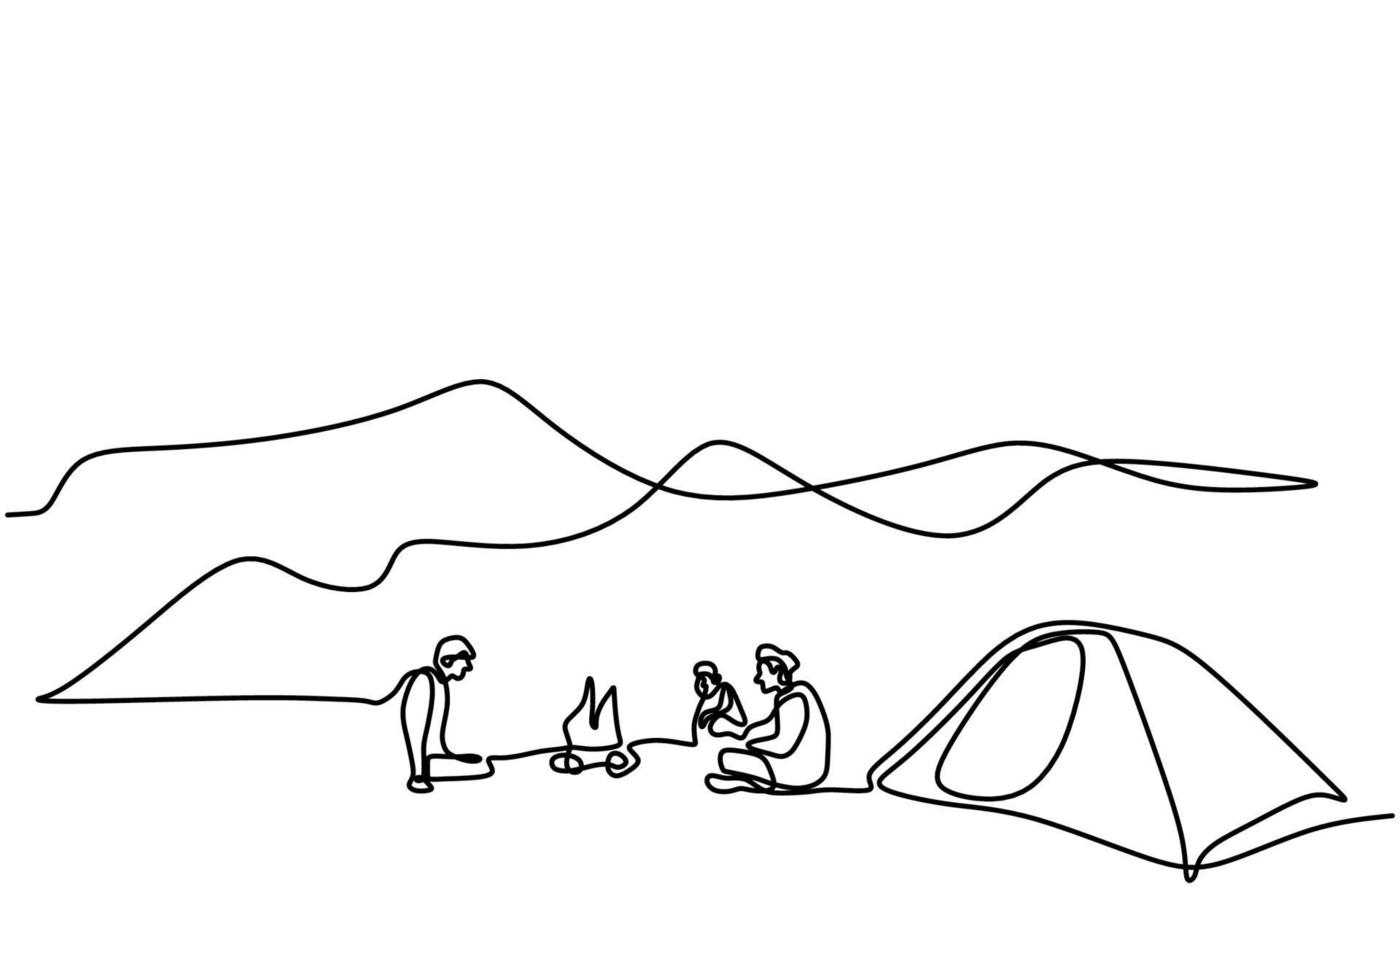 uma linha desenhando pessoas acampando. jovem gosta de atividades ao ar livre com tendas e fogueira. aventura de acampamento e exploração. homem animado por acampar nas montanhas curtindo a natureza vetor